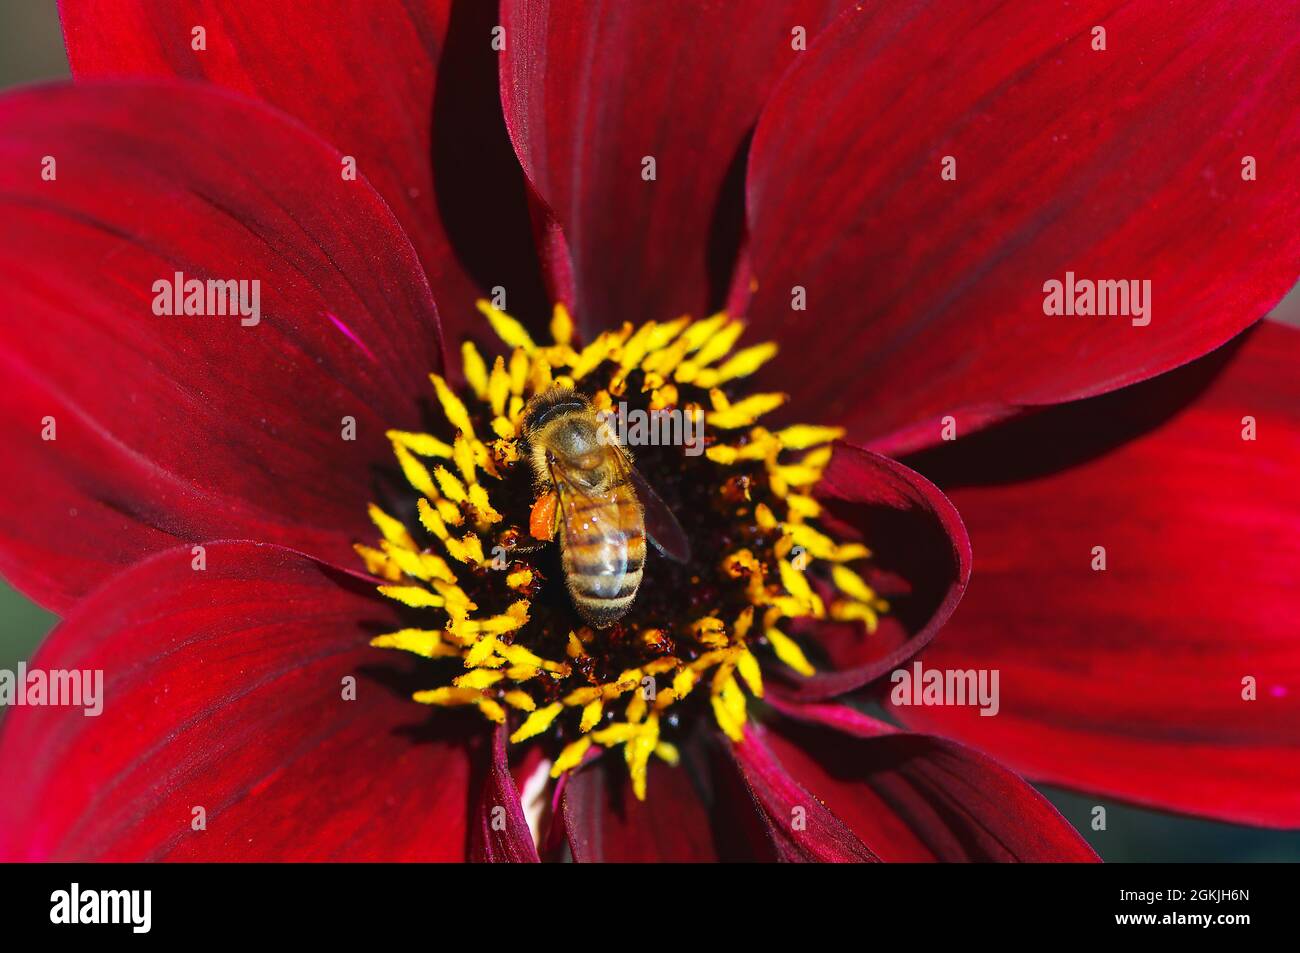 Eine westliche Honigbiene (APIs mellifera) im Zentrum einer roten Dahlia (Merlot Madness) Blüte. Stockfoto